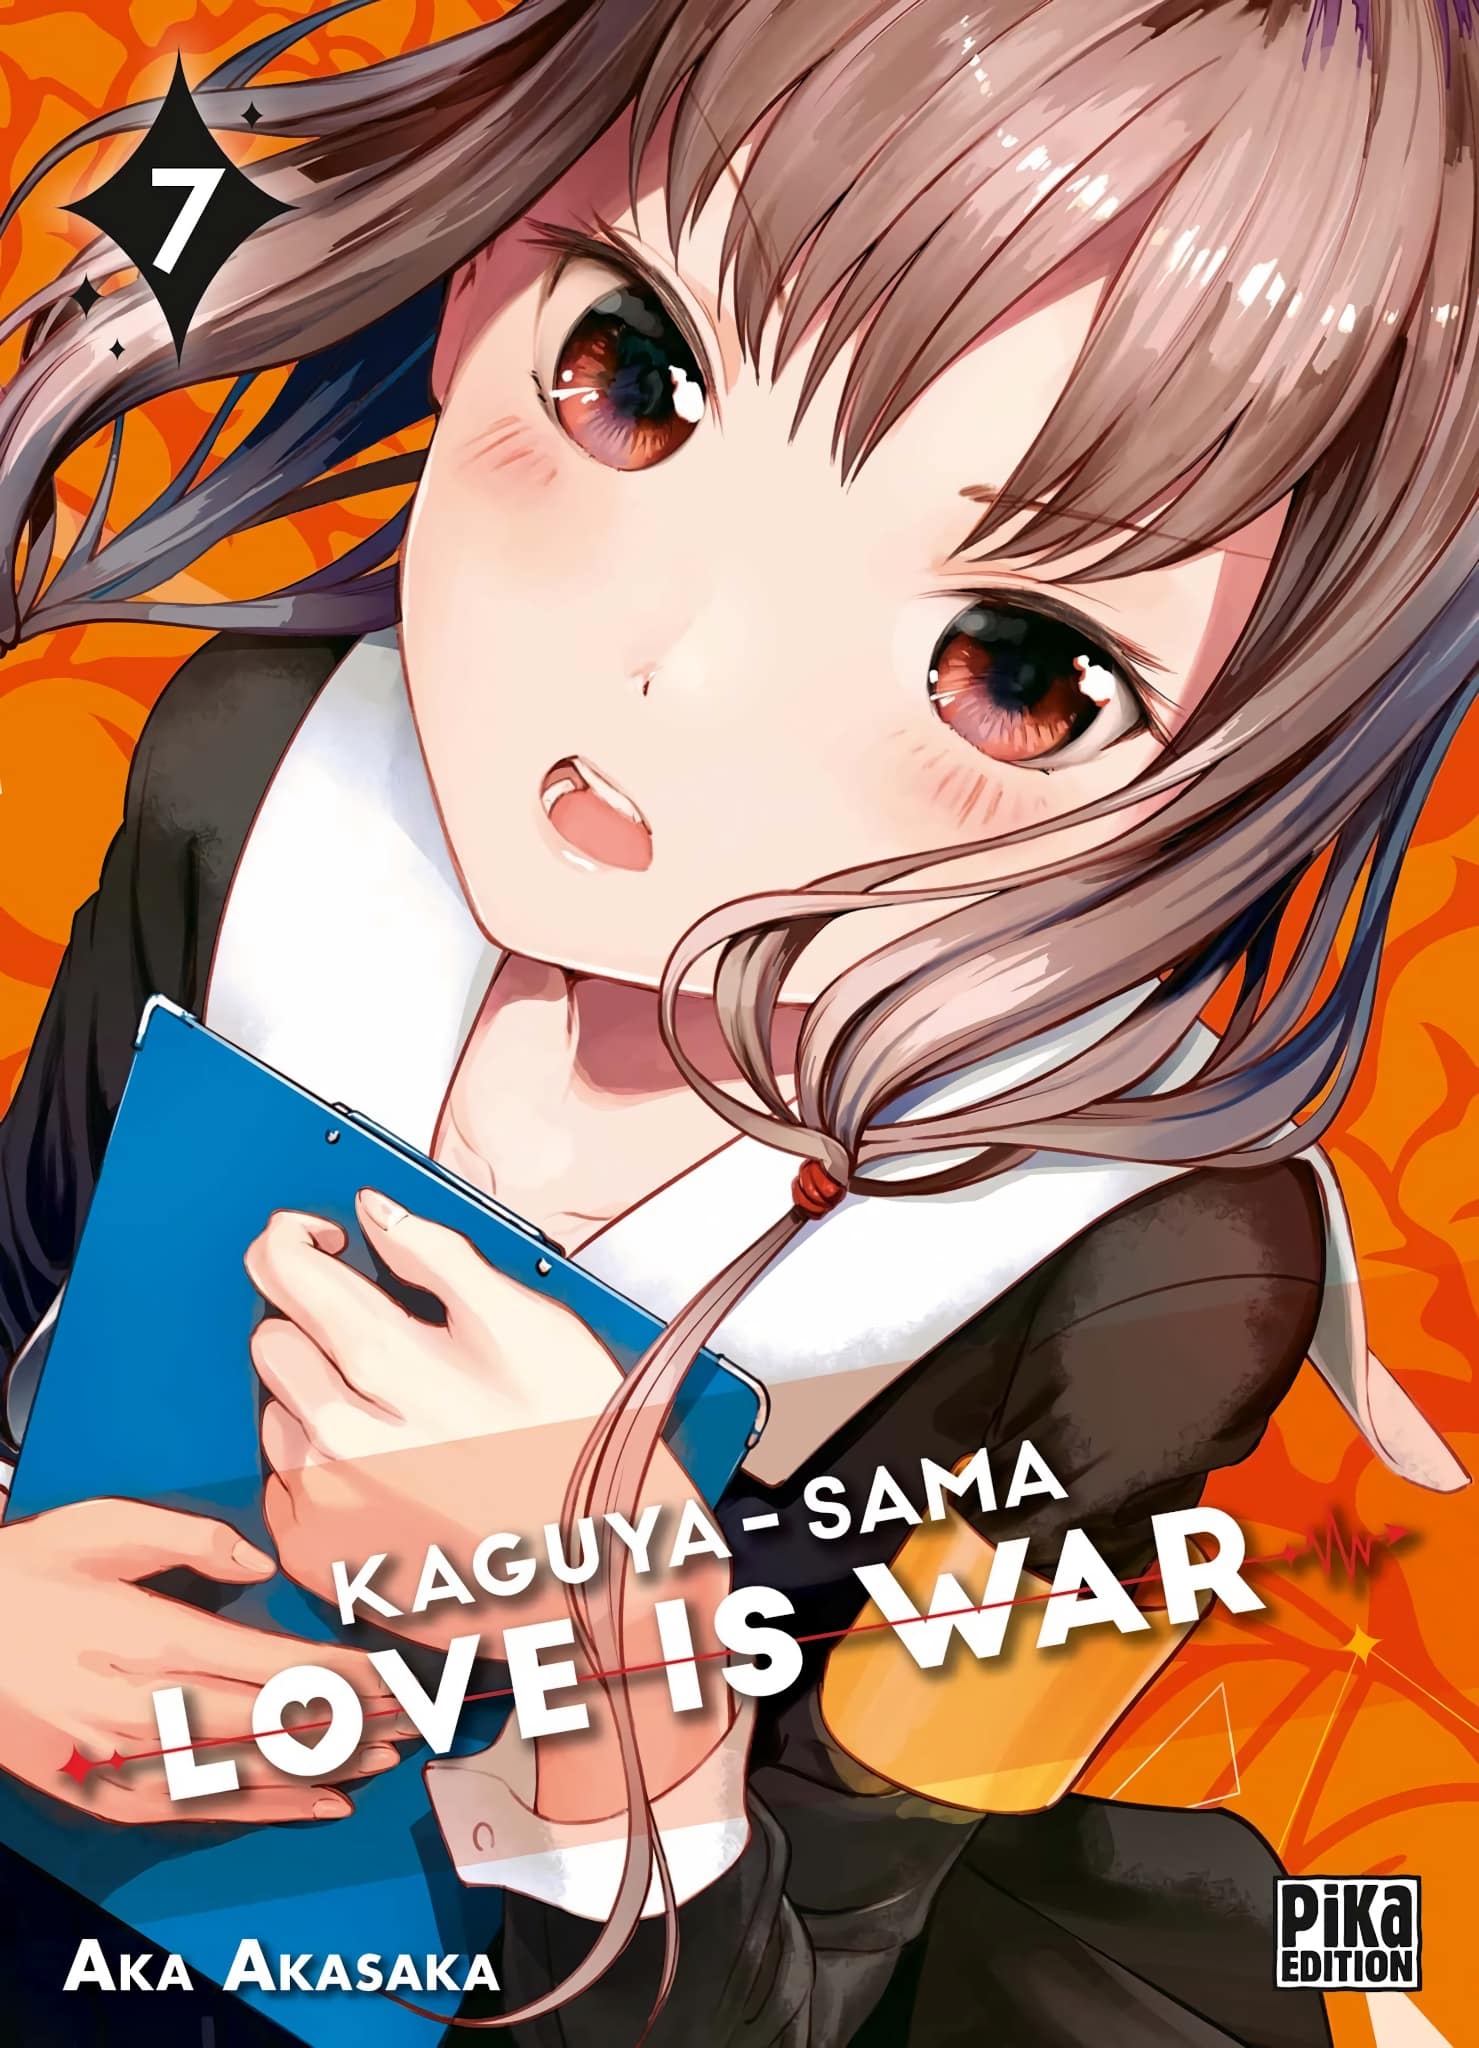 Tome 7 du manga Kaguya-sama Love is War